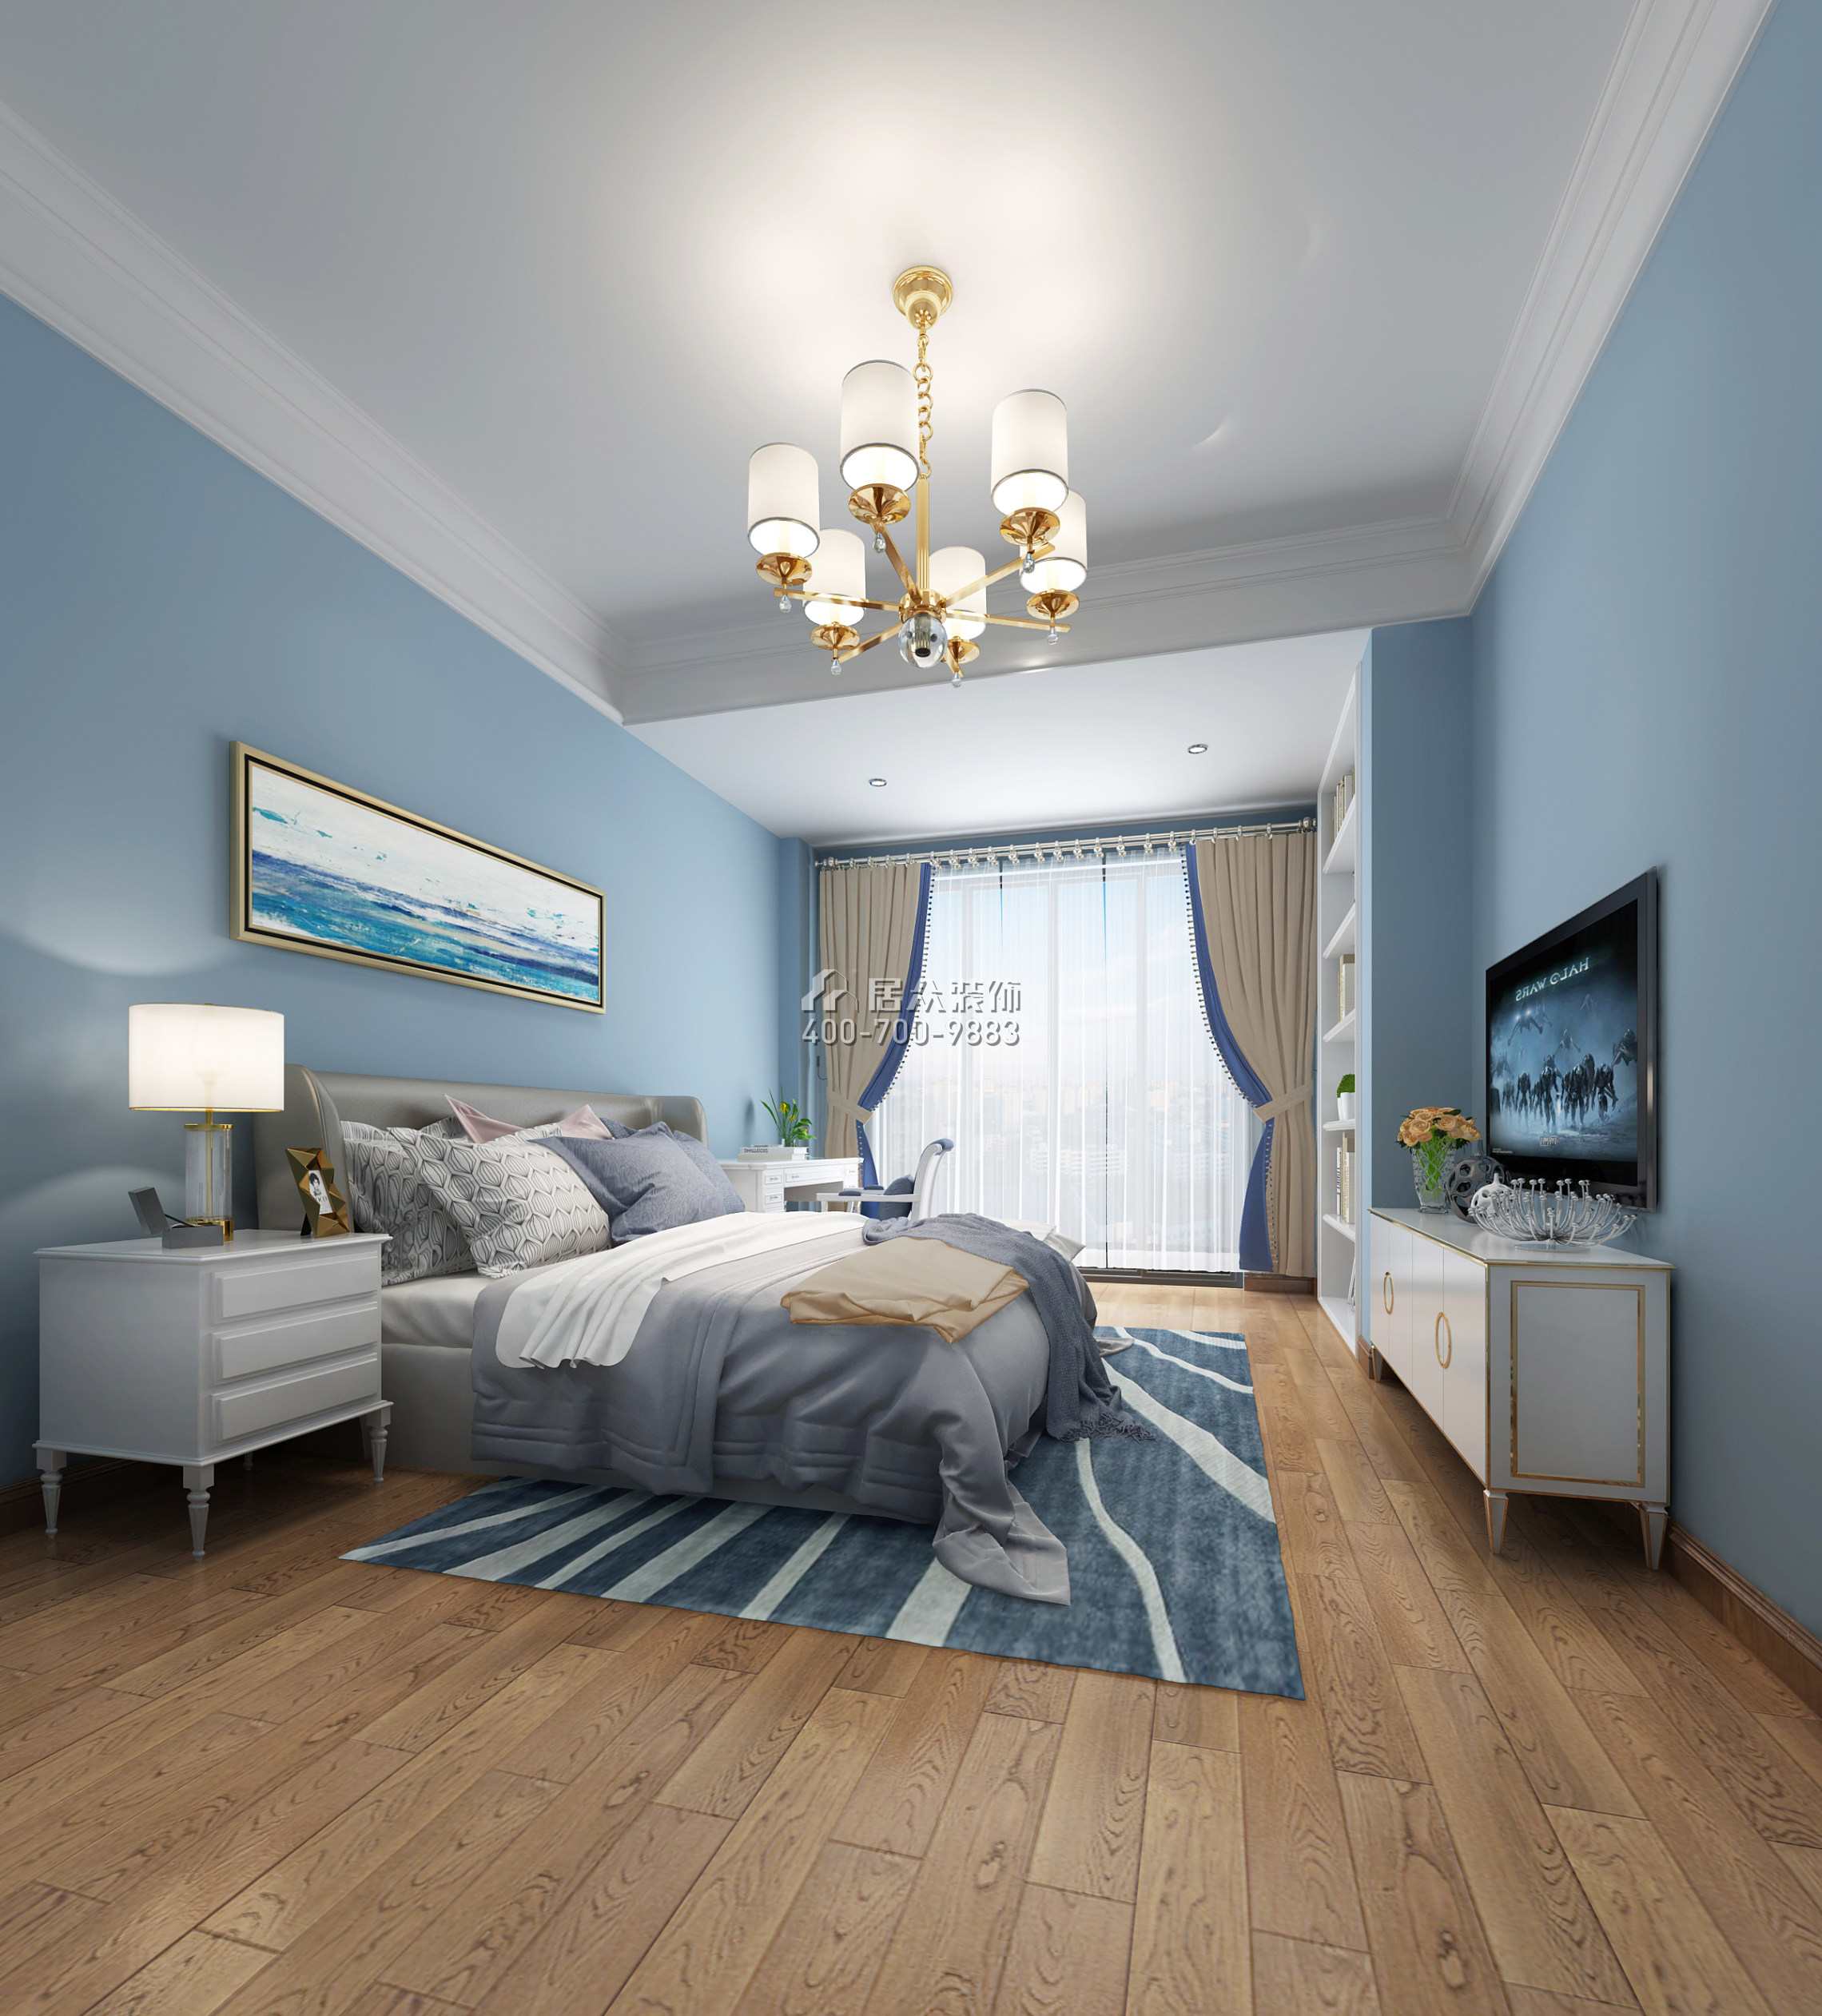 華策嶺峰國際168平方米歐式風格別墅戶型臥室裝修效果圖